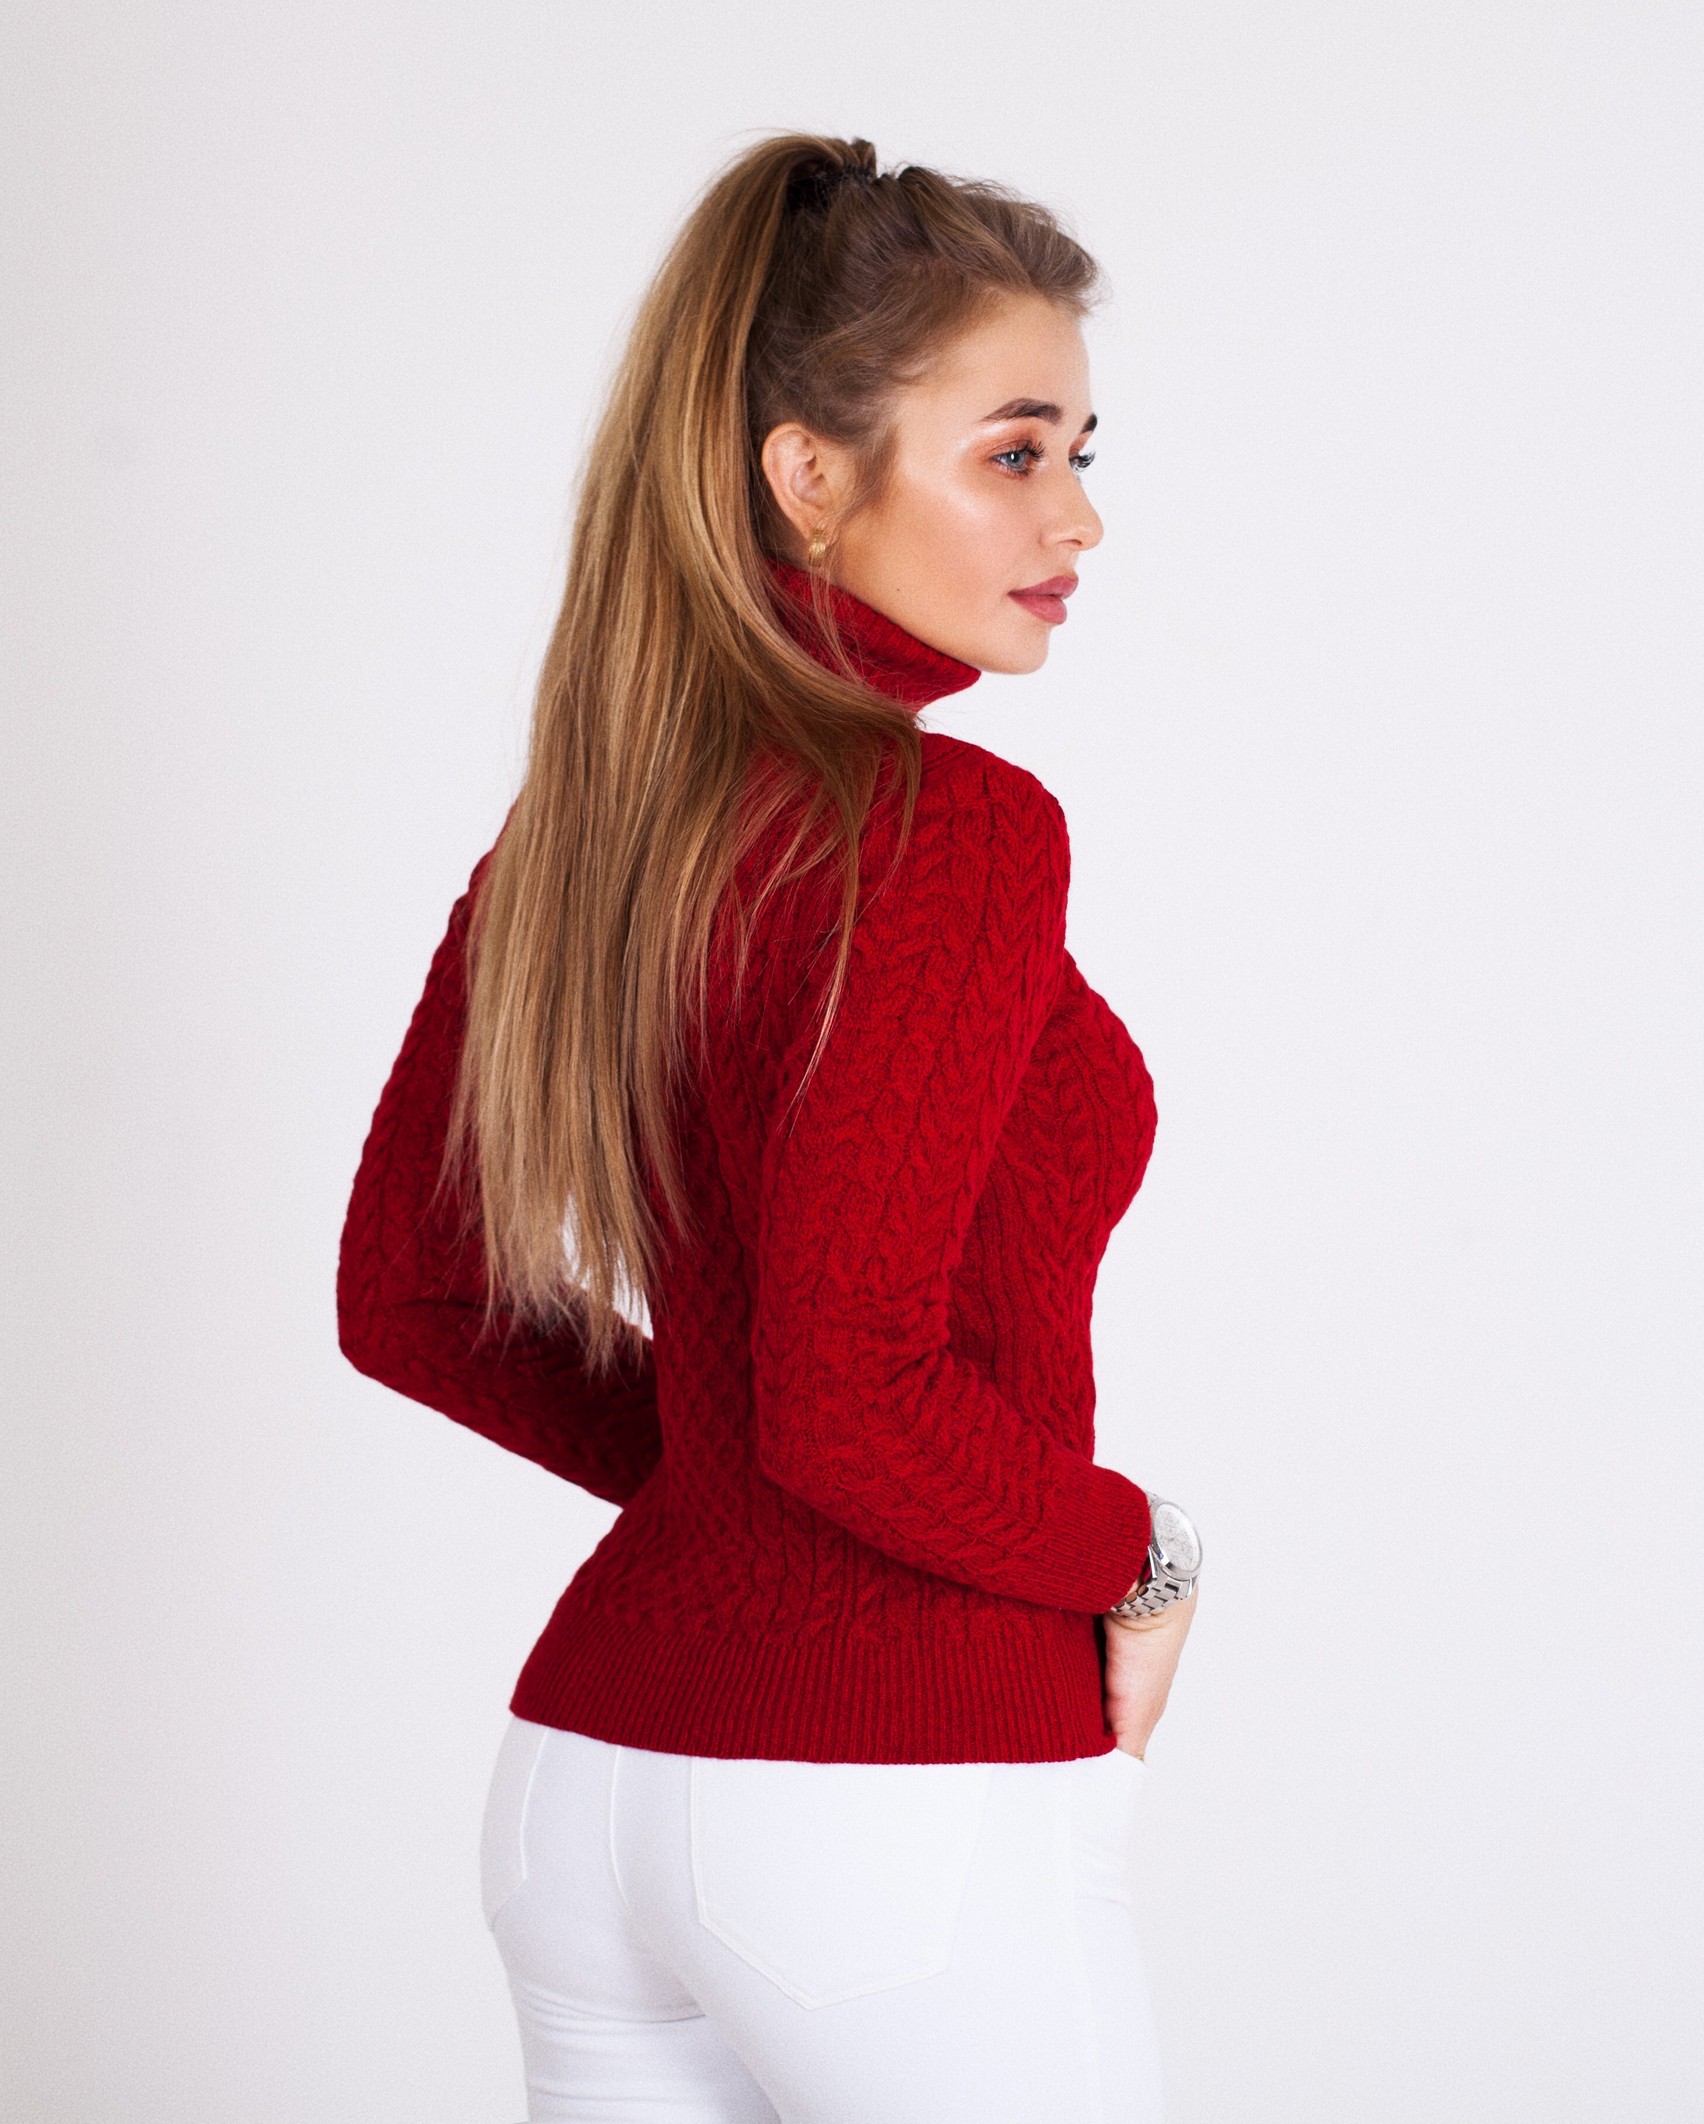 Девушка в красном свитере